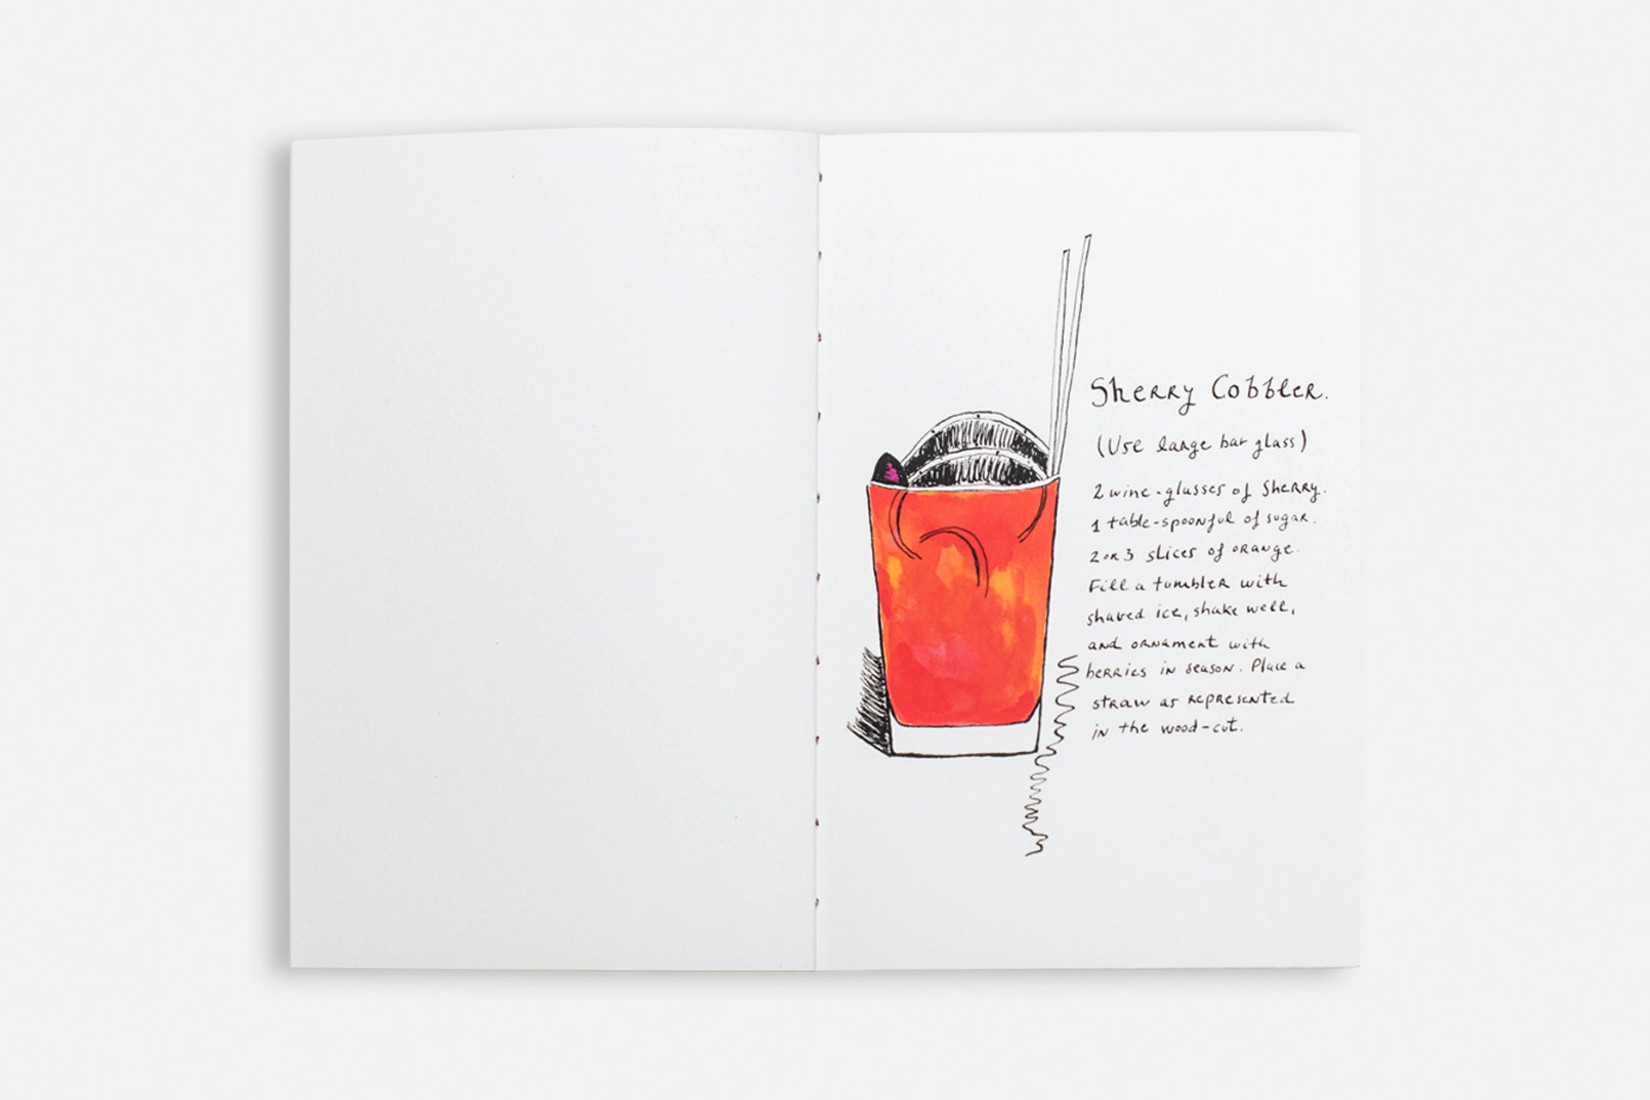 How to Mix Drinks - Bookaneer Notebook